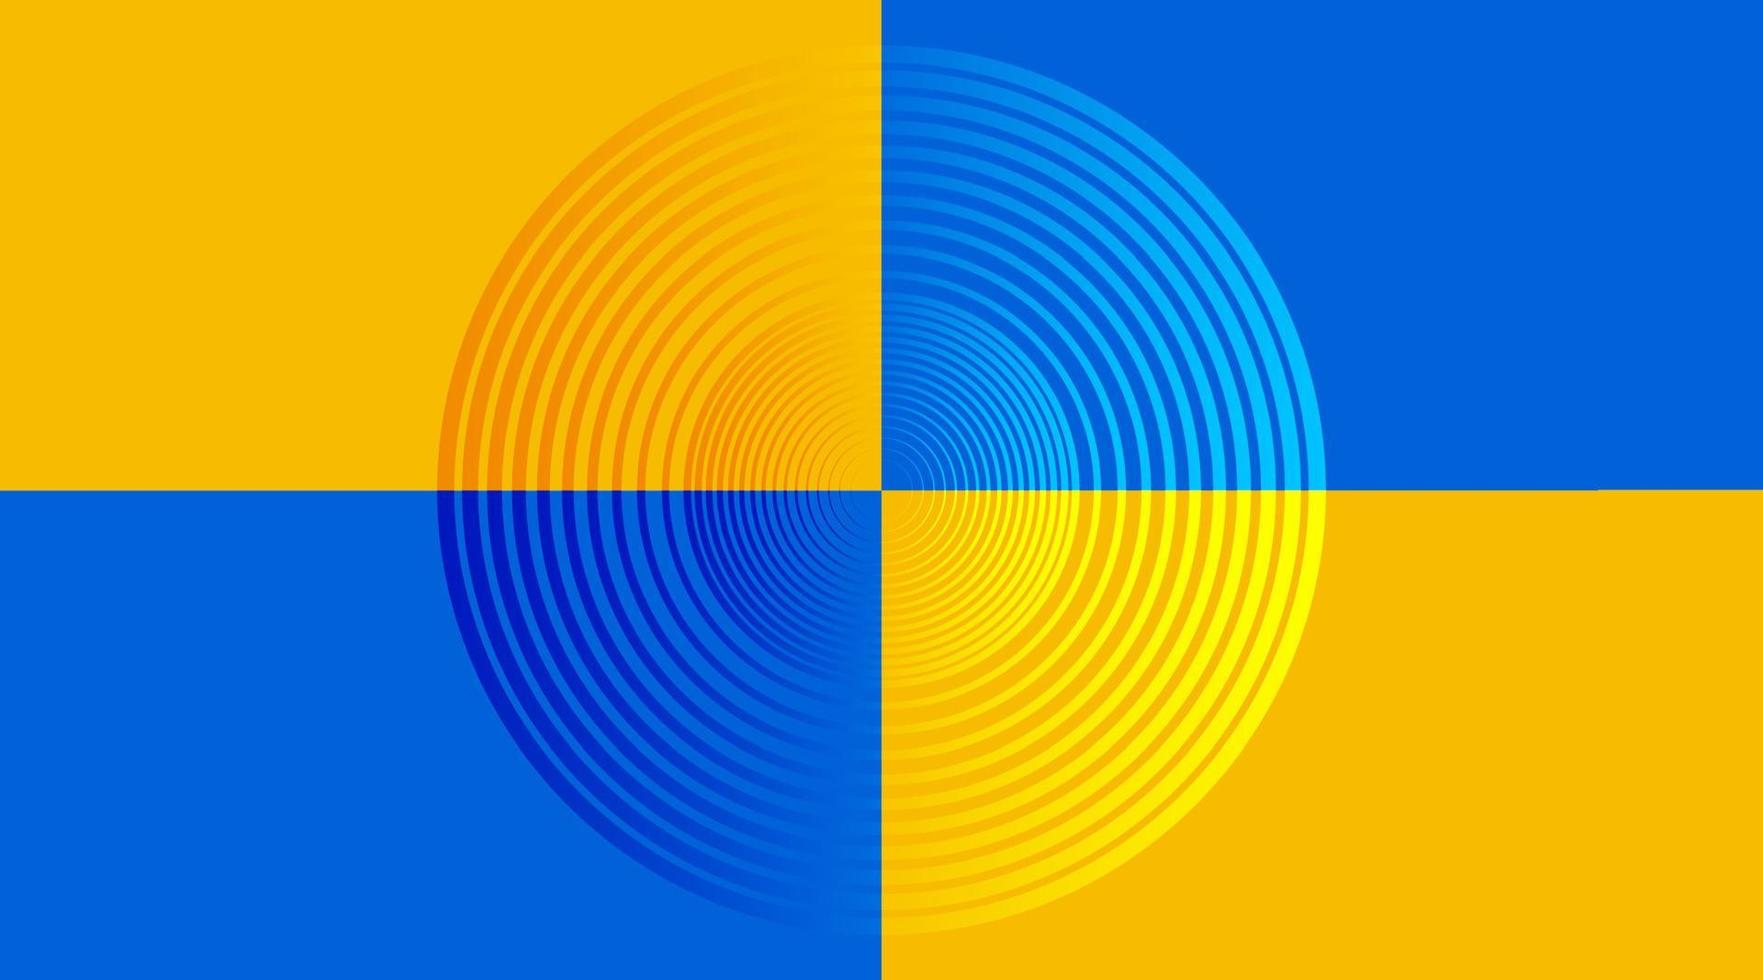 Vektorhintergrund, Kreis in der Mitte, auf blauer und gelber Farbe vektor